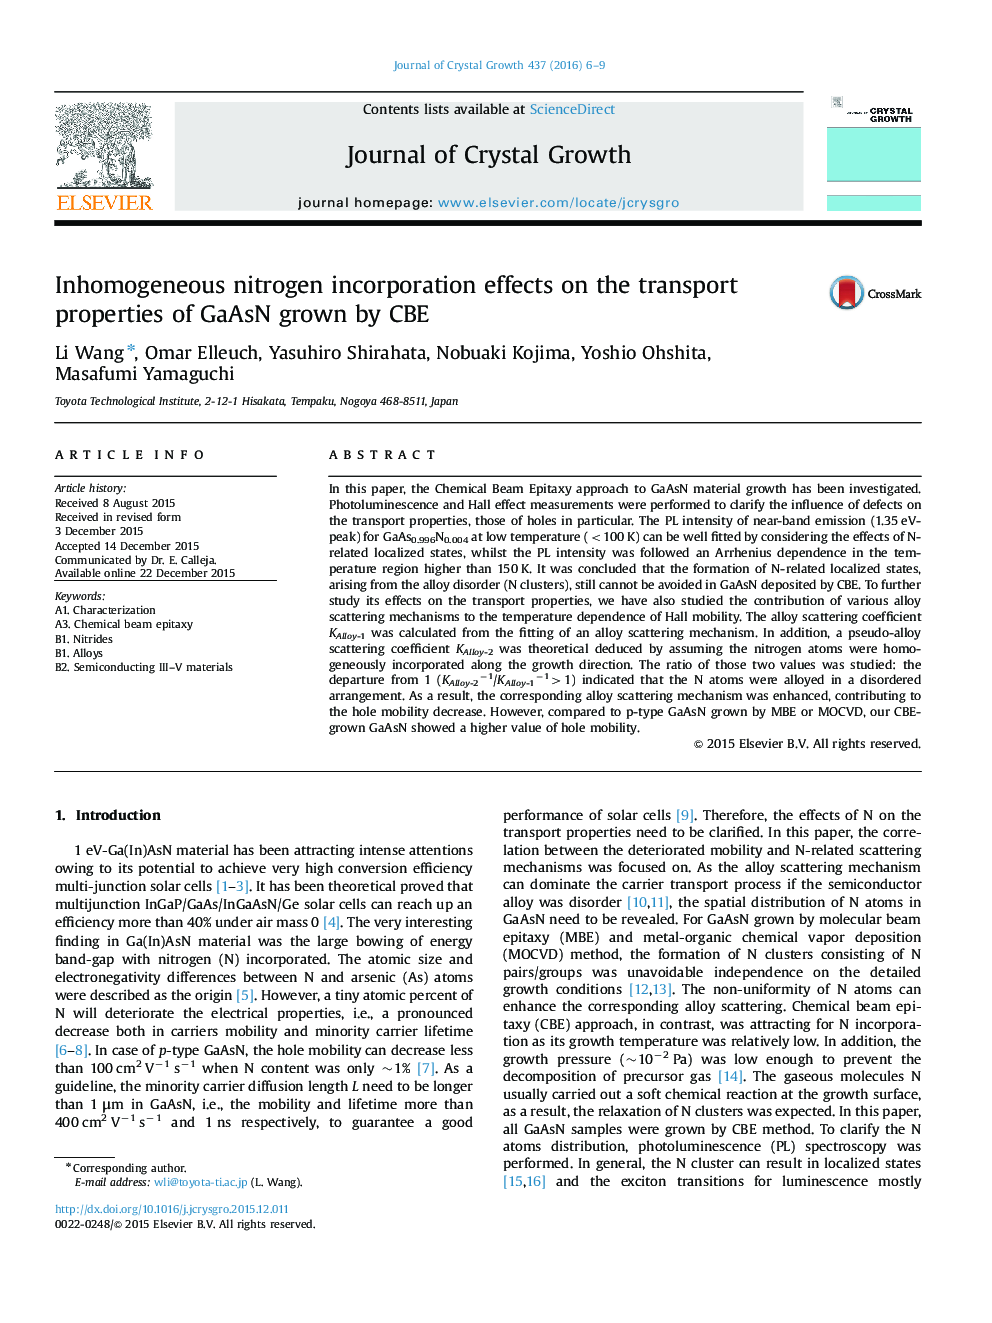 Inhomogeneous nitrogen incorporation effects on the transport properties of GaAsN grown by CBE